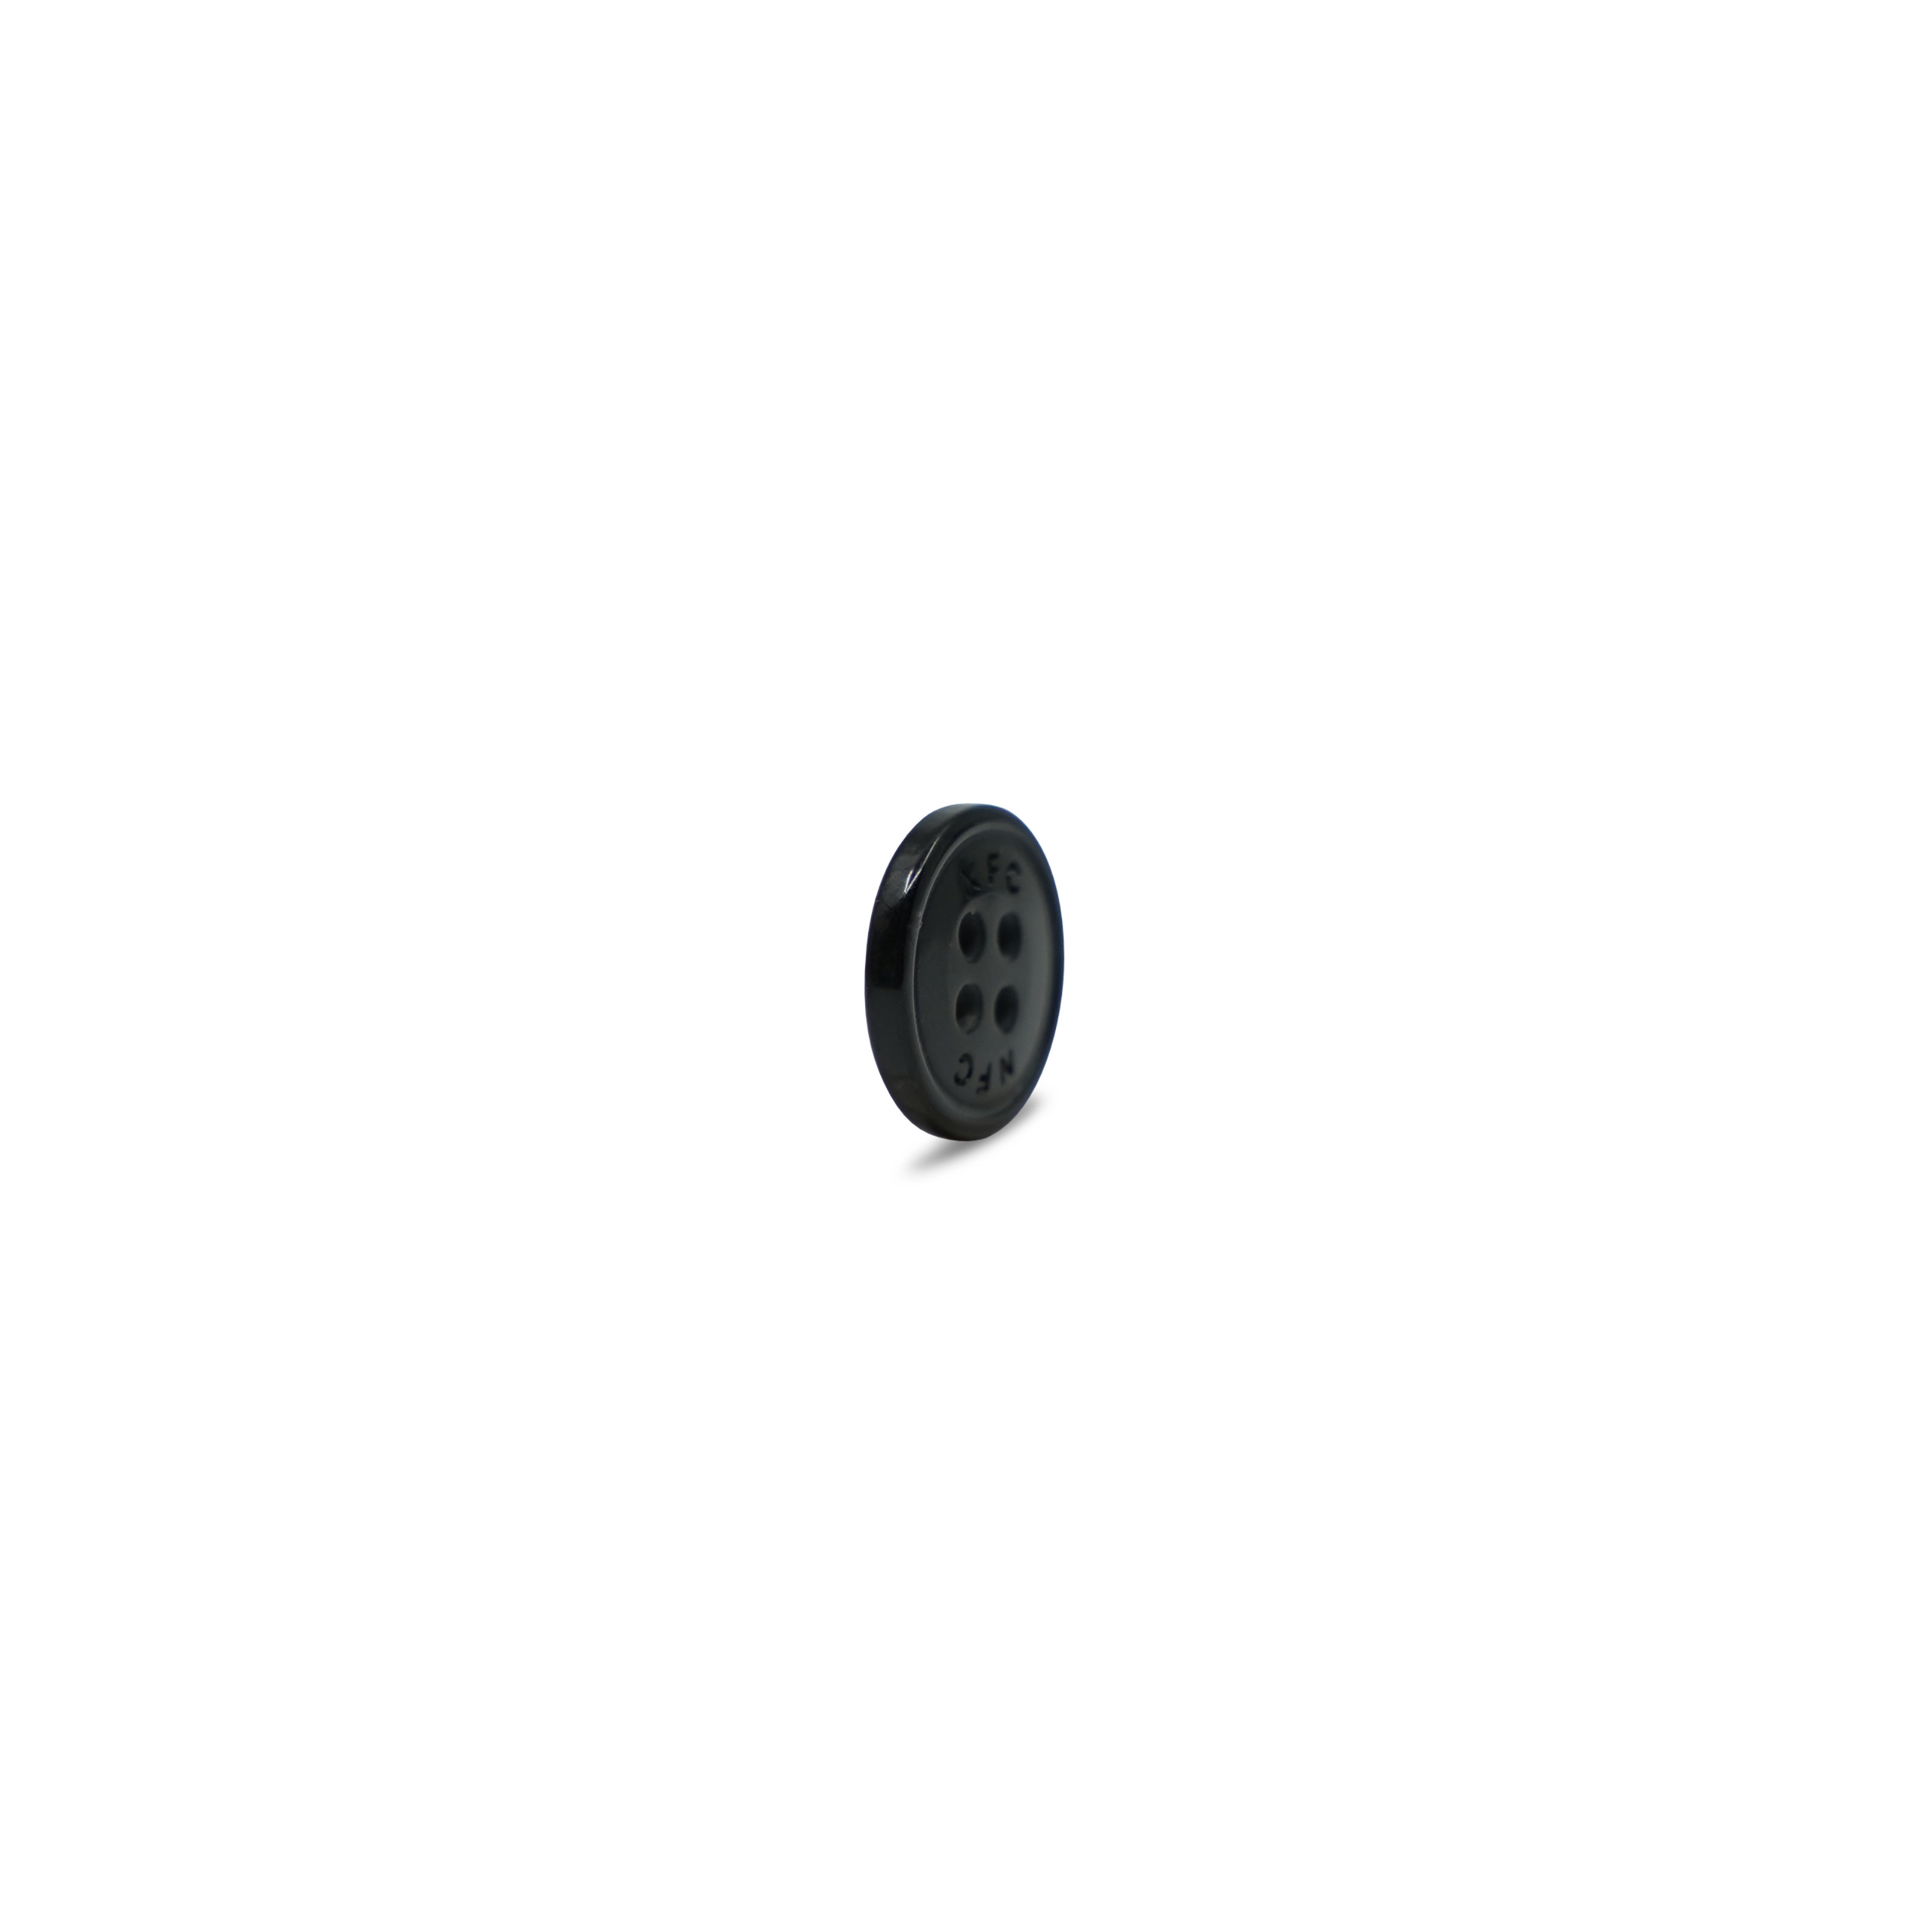 Seitenansicht NFC Kunstharz Knopf in schwarz